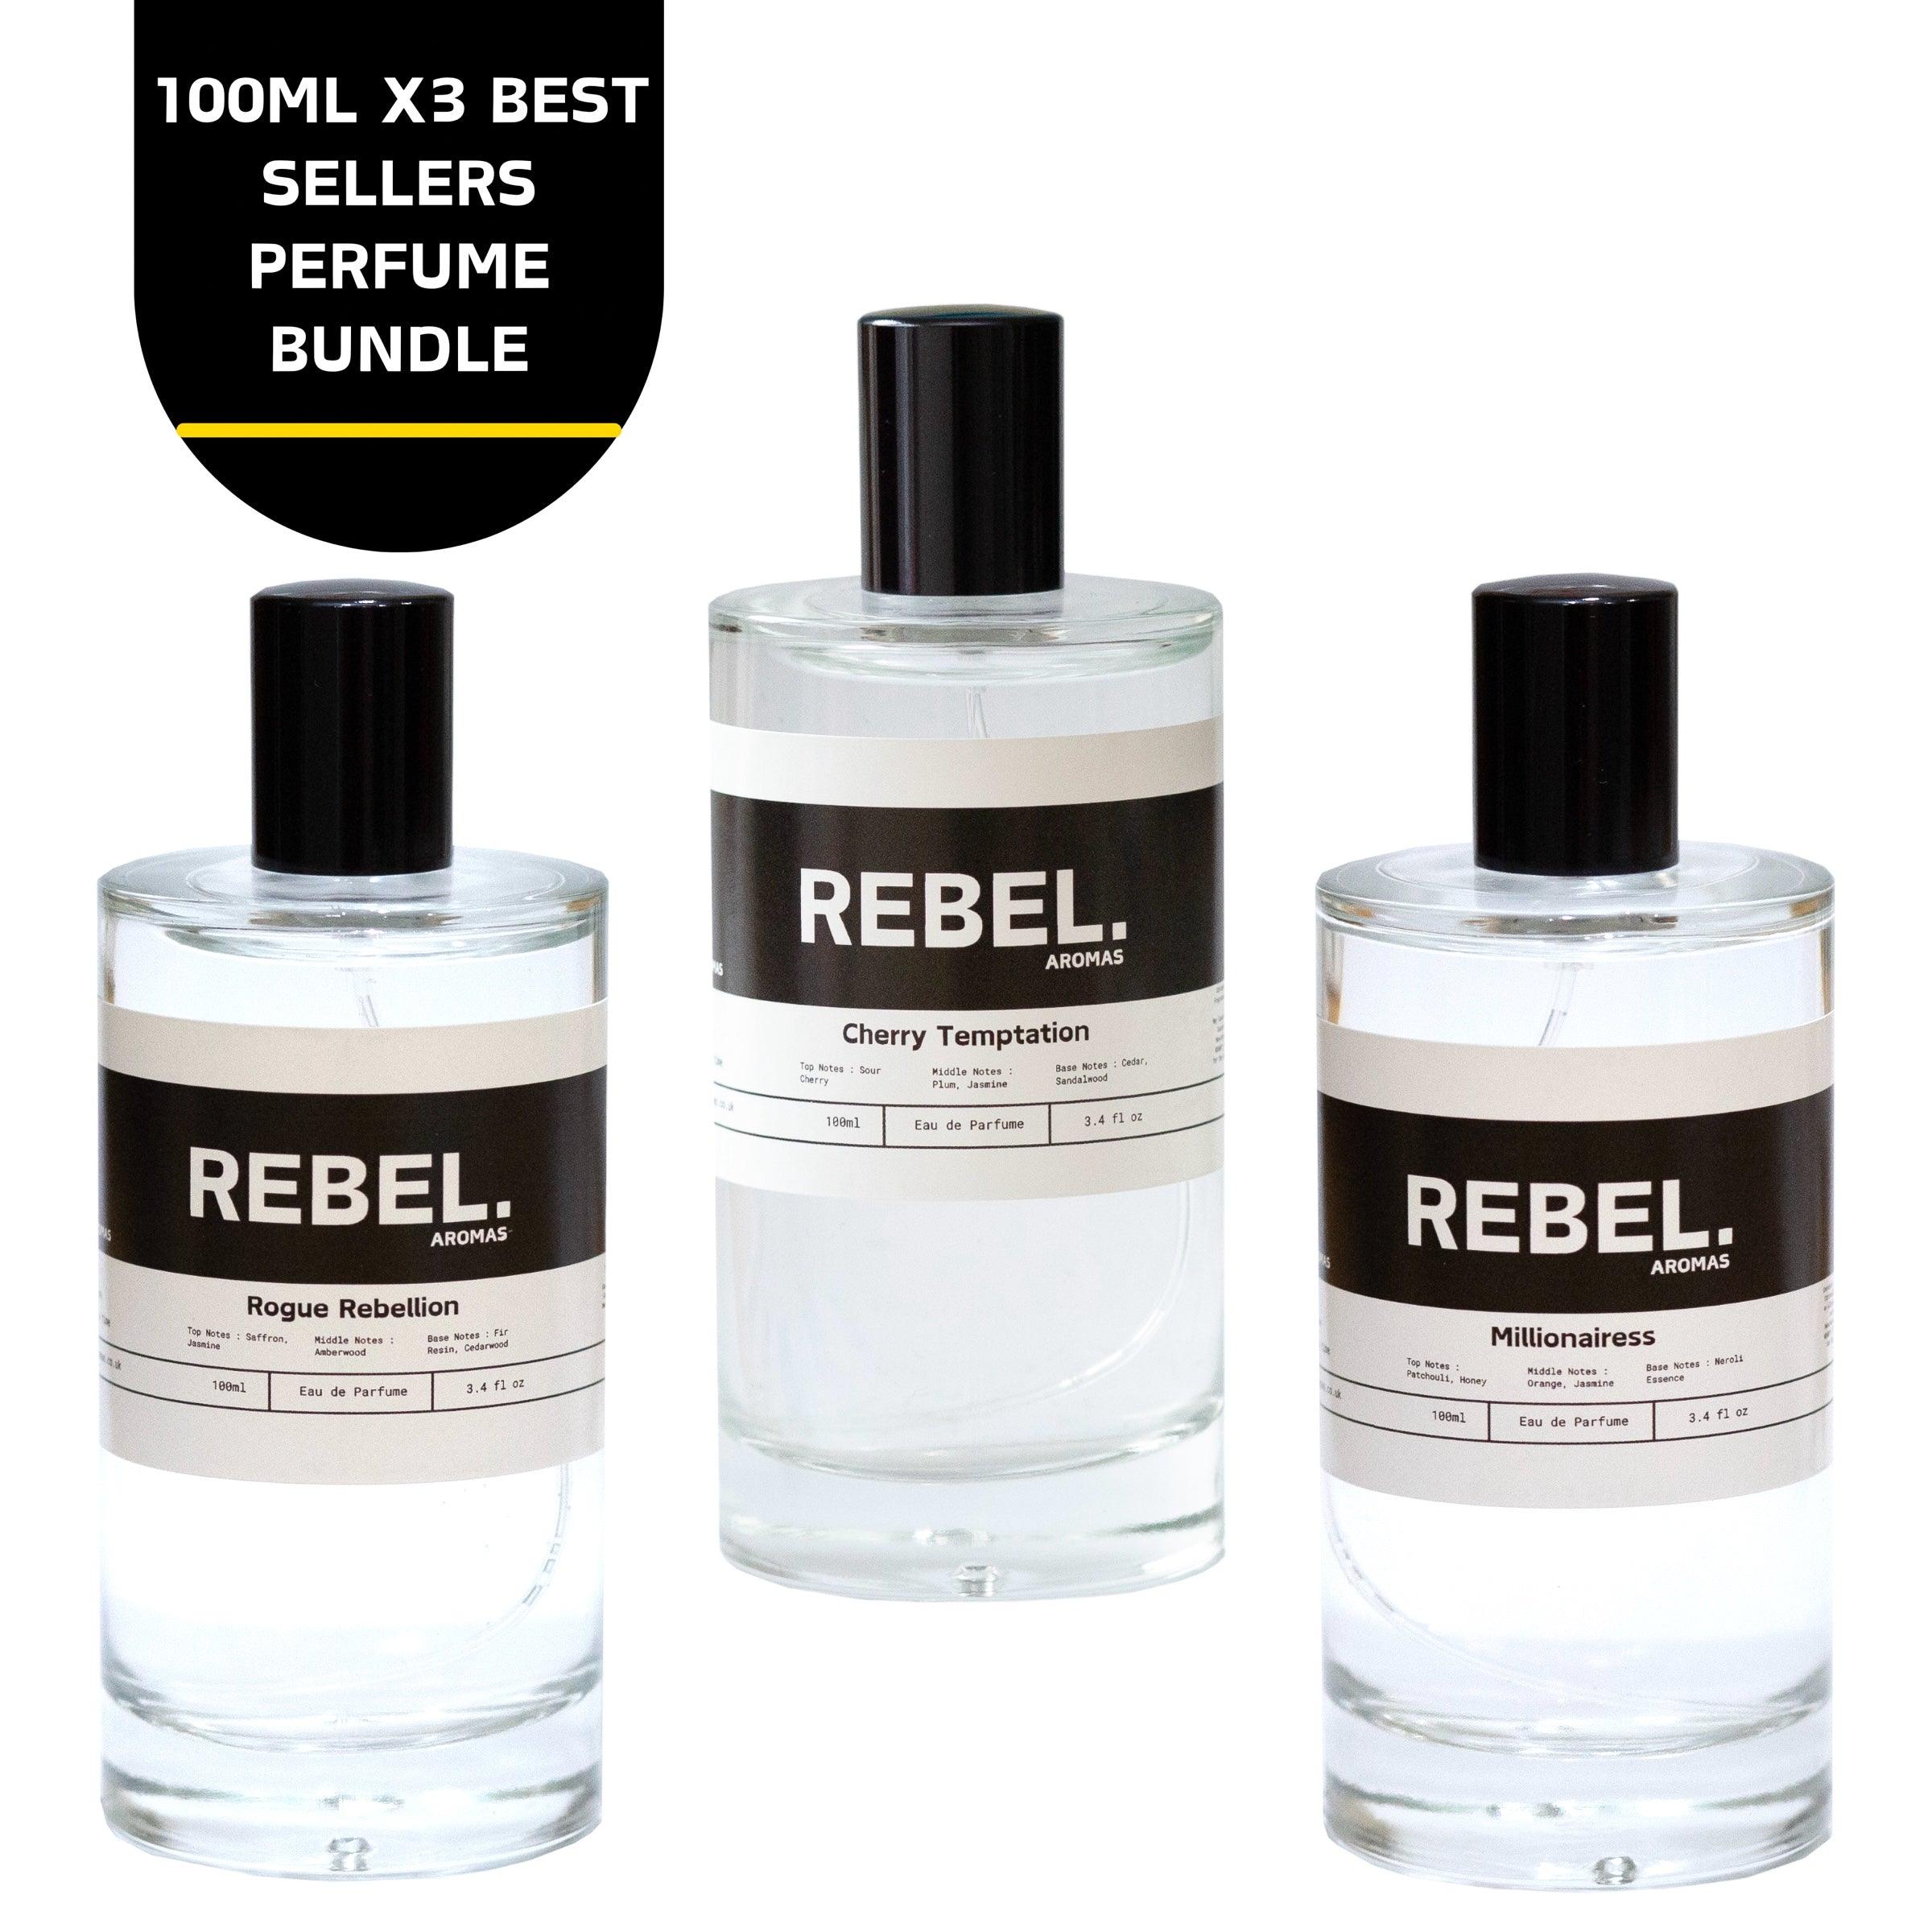 3x Best Sellers 100ml Perfume Bundle - Rebel Aromas